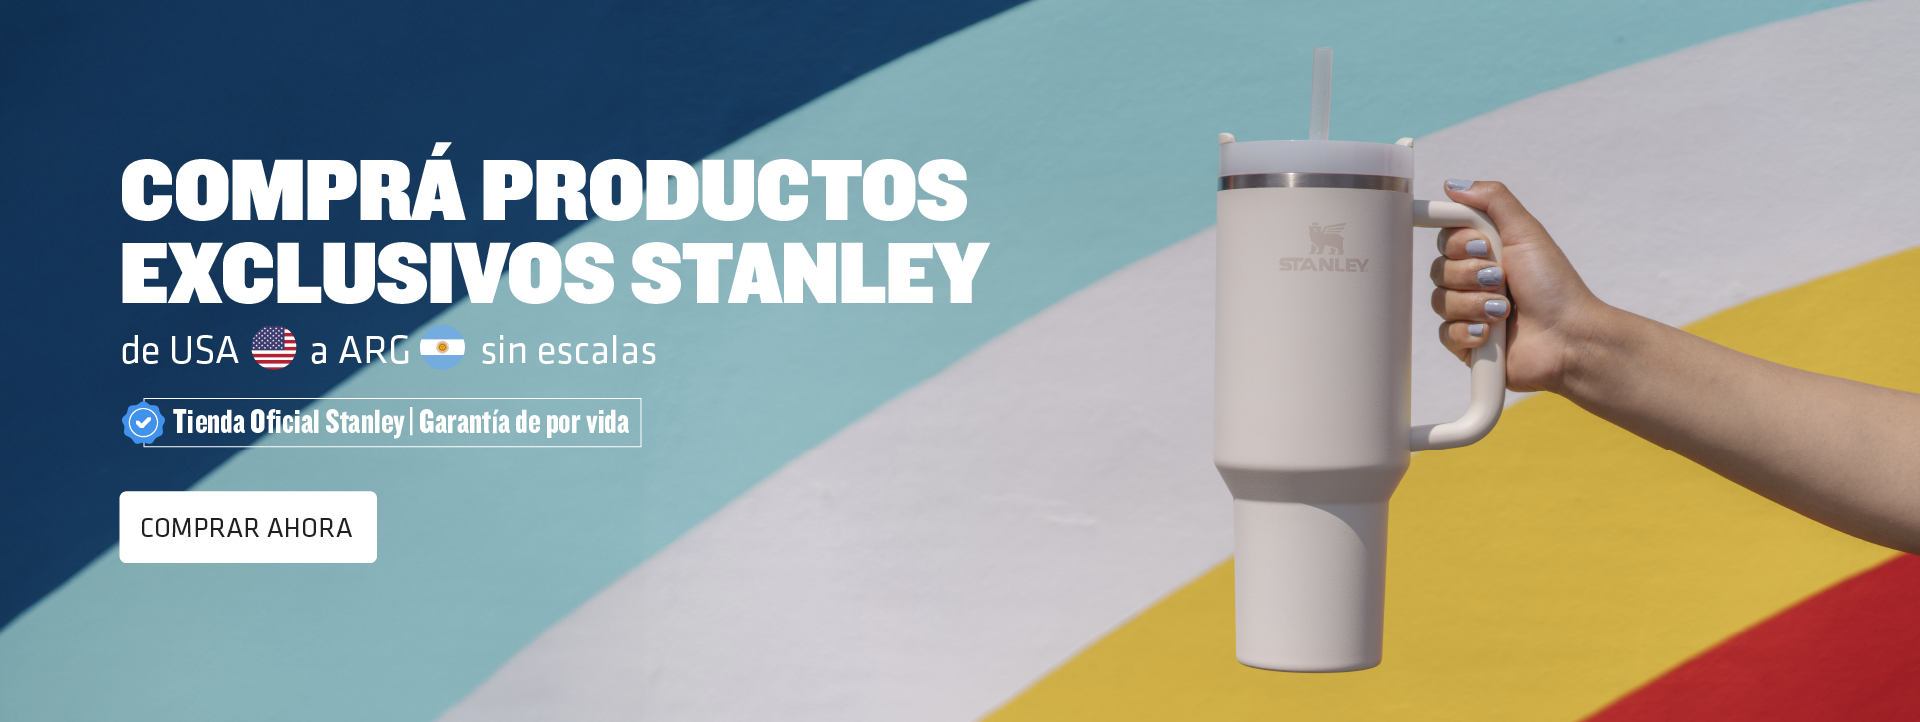 AeroBox Paraguay - Termos #Stanley originales directo de USA🇺🇸:  www.stanley1913.com ¡Traelos con nosotros al mejor precio! 👌 Y si no tenés  💳tarjeta, ¡hacemos las compras por vos!